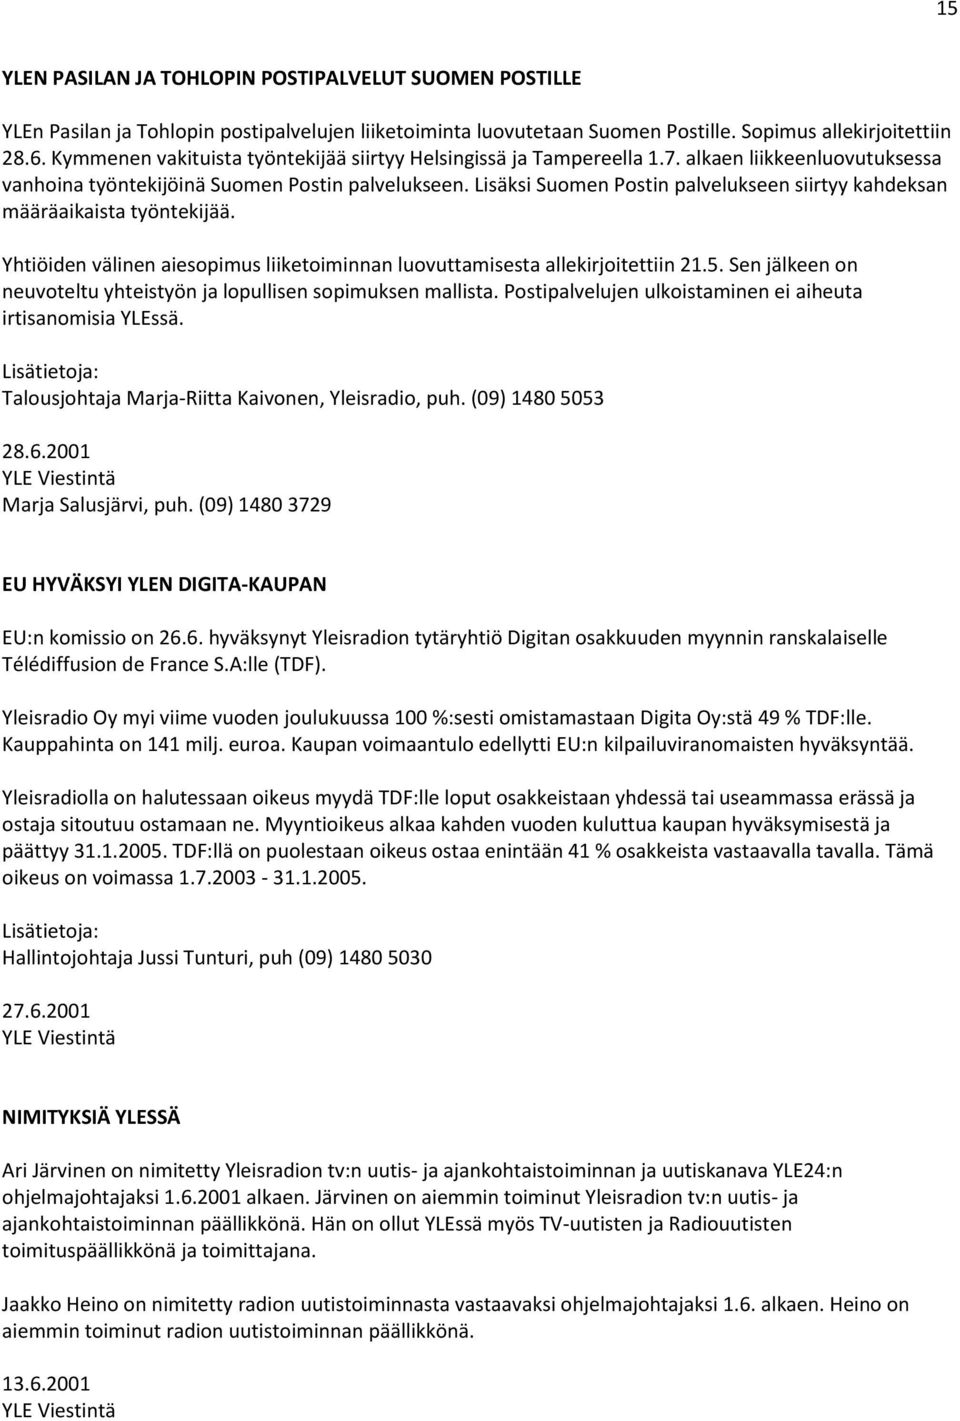 Lisäksi Suomen Postin palvelukseen siirtyy kahdeksan määräaikaista työntekijää. Yhtiöiden välinen aiesopimus liiketoiminnan luovuttamisesta allekirjoitettiin 21.5.